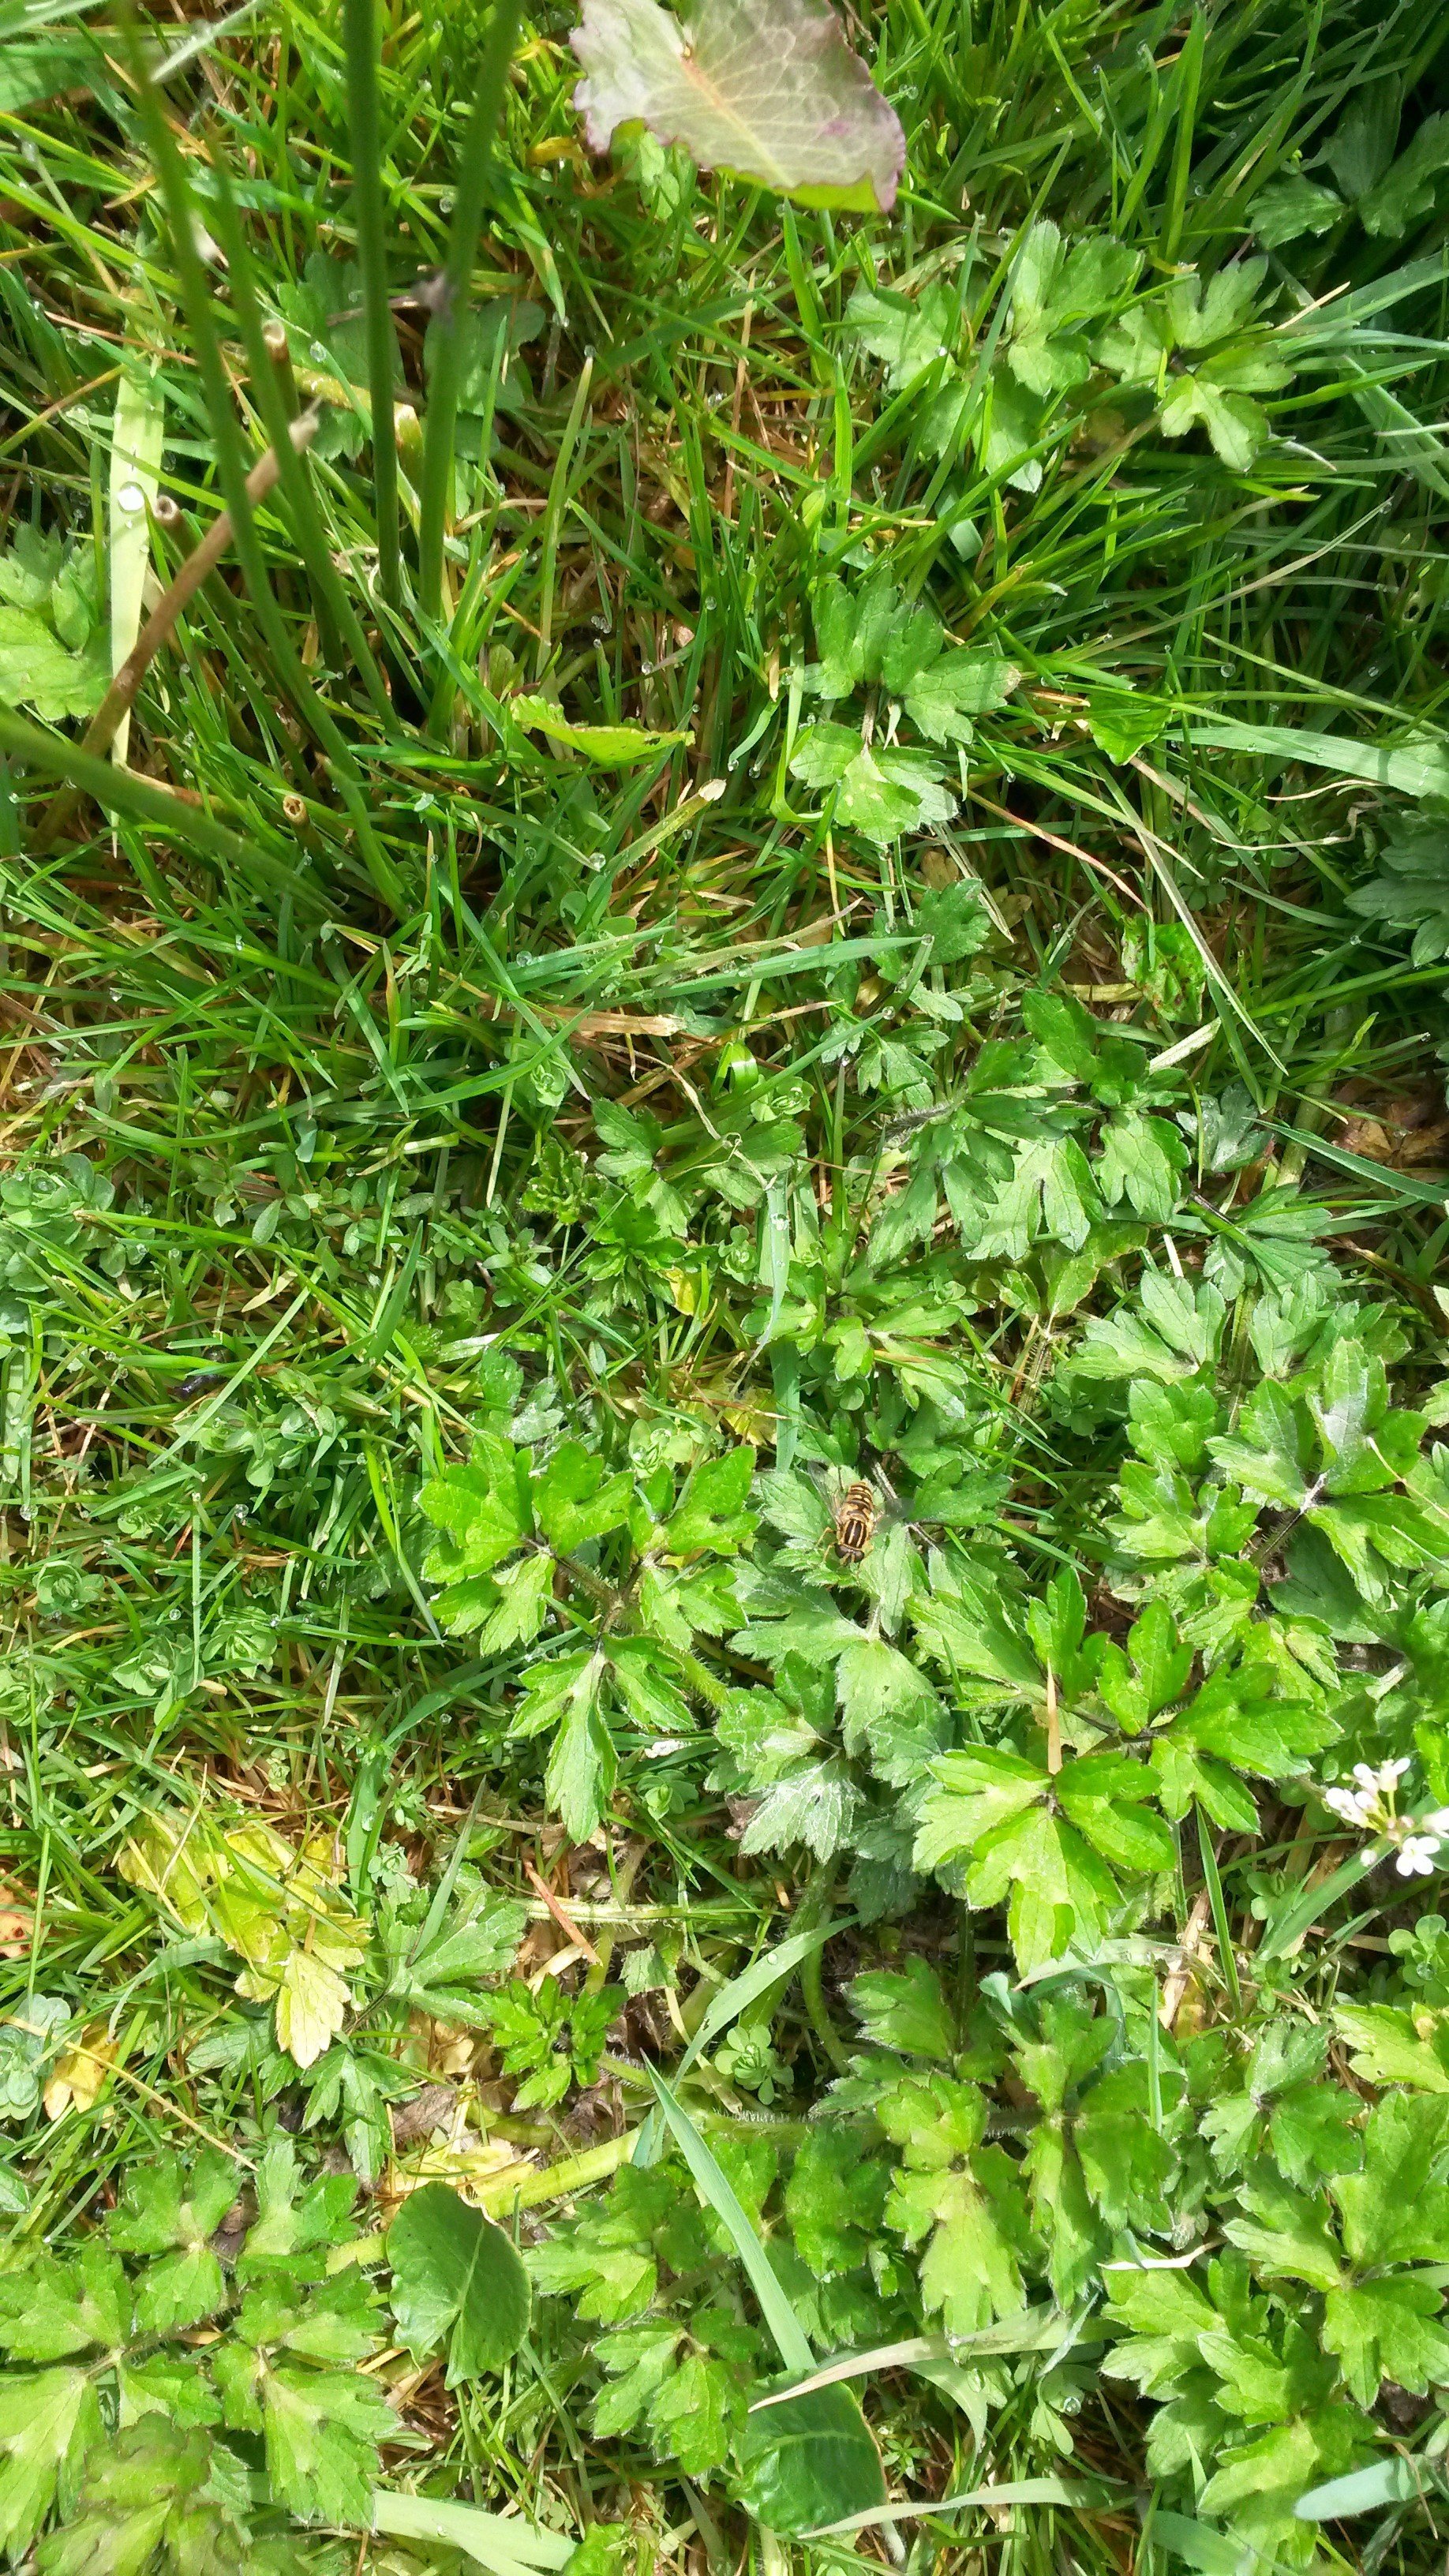 Water dropwort (Oenanthe crocata)